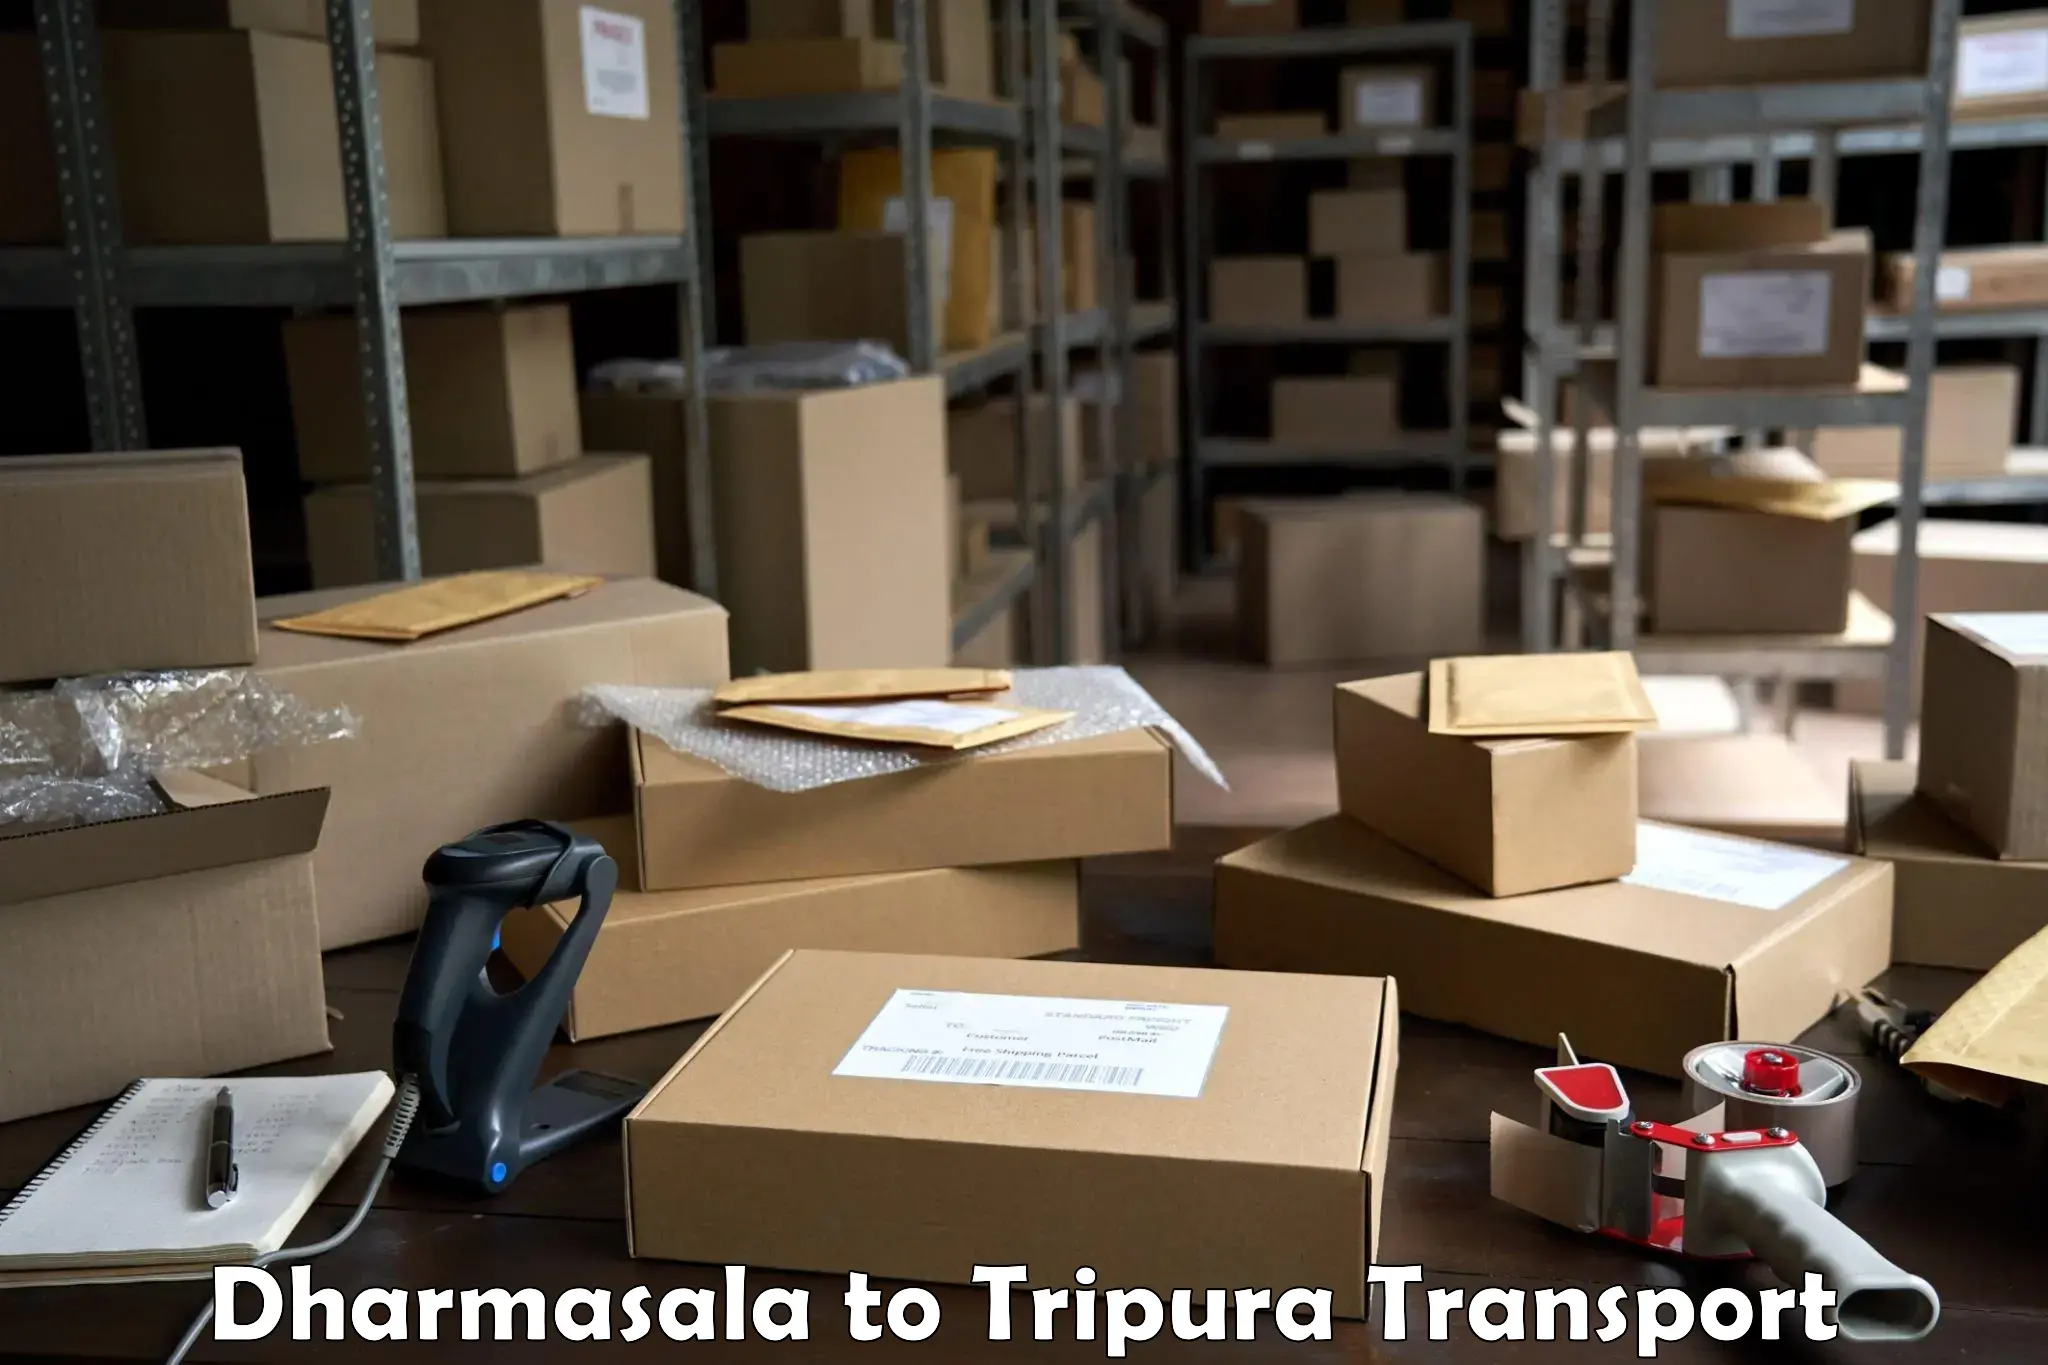 Furniture transport service Dharmasala to Tripura